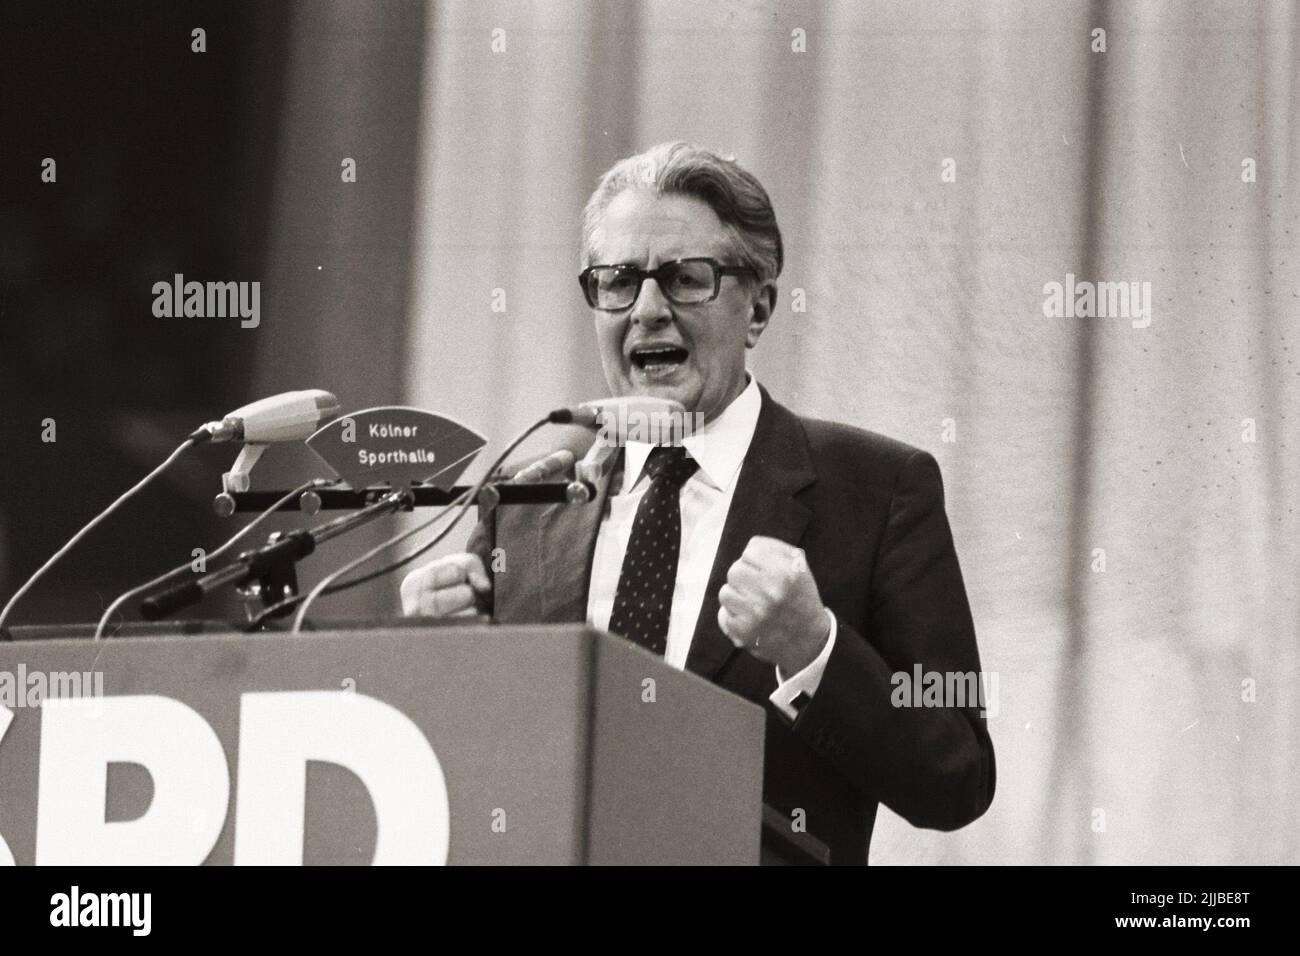 Der deutsche SPD Politiker Hans-Jochen Vogel hält eine Rede während einer SPD Pressekonferenz 1983 in Köln. Stock Photo